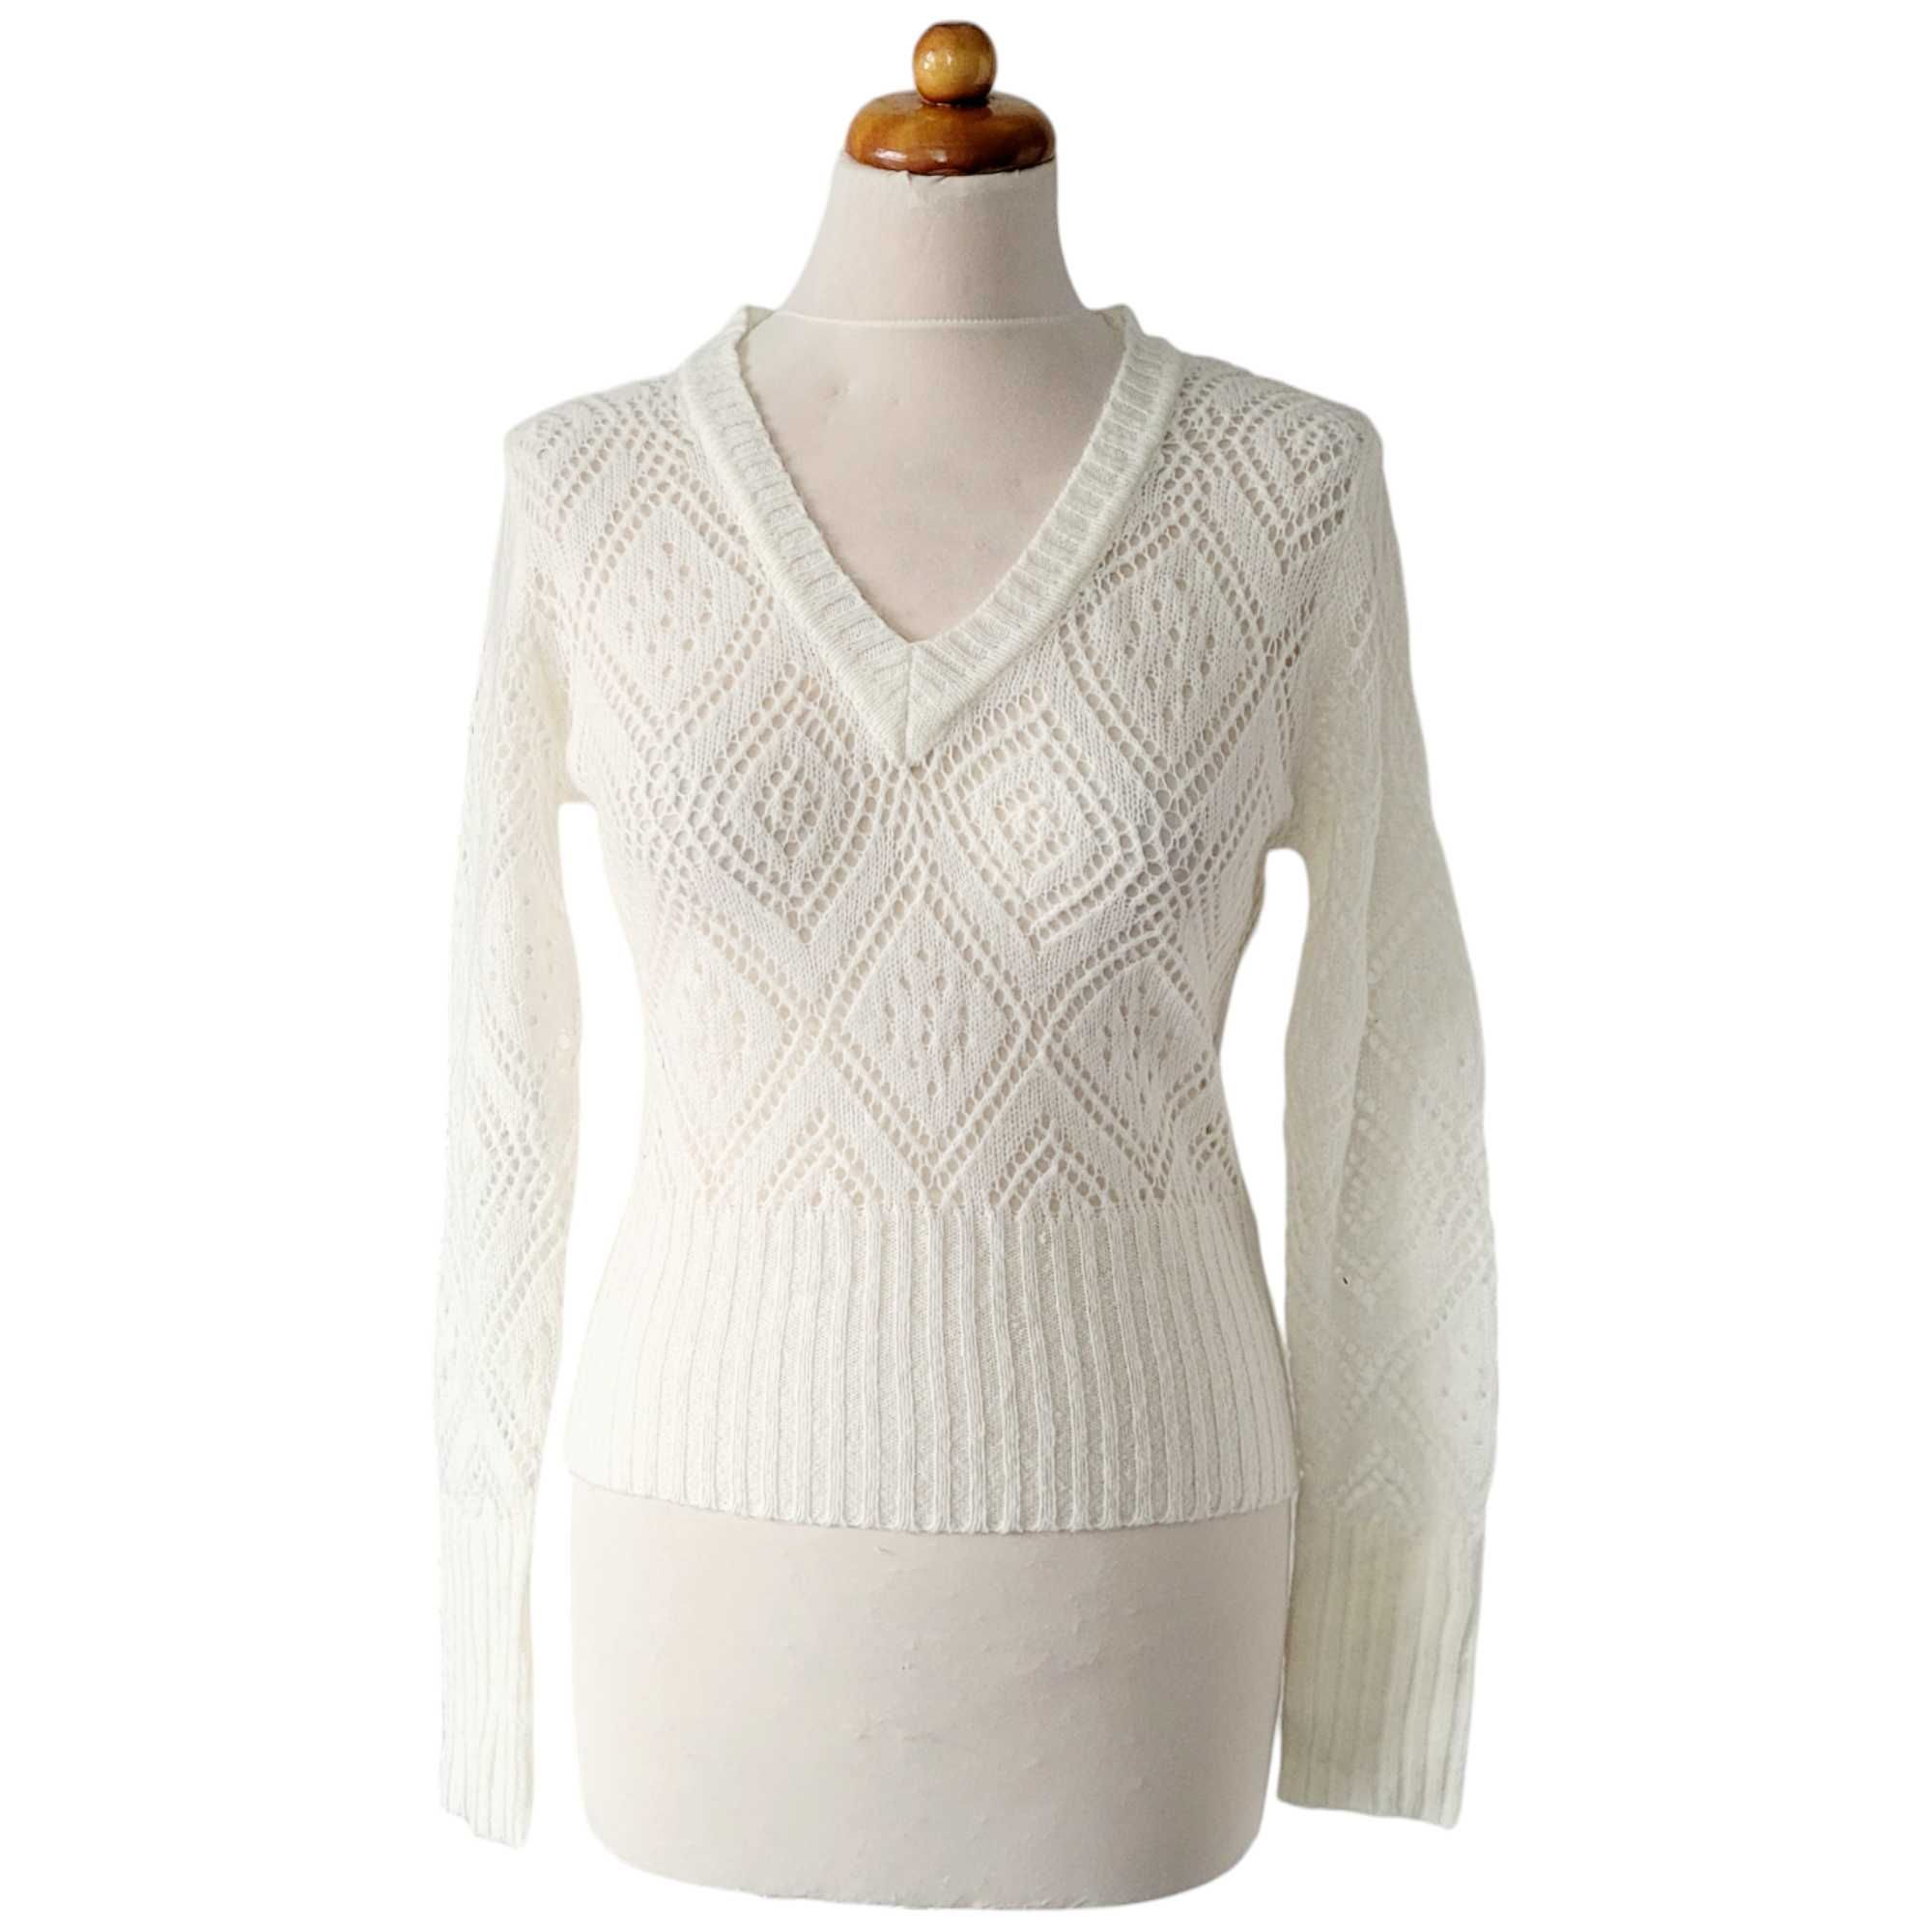 Kremowy ażurowy sweter damski 55% kaszmir romby angelcore bluzka